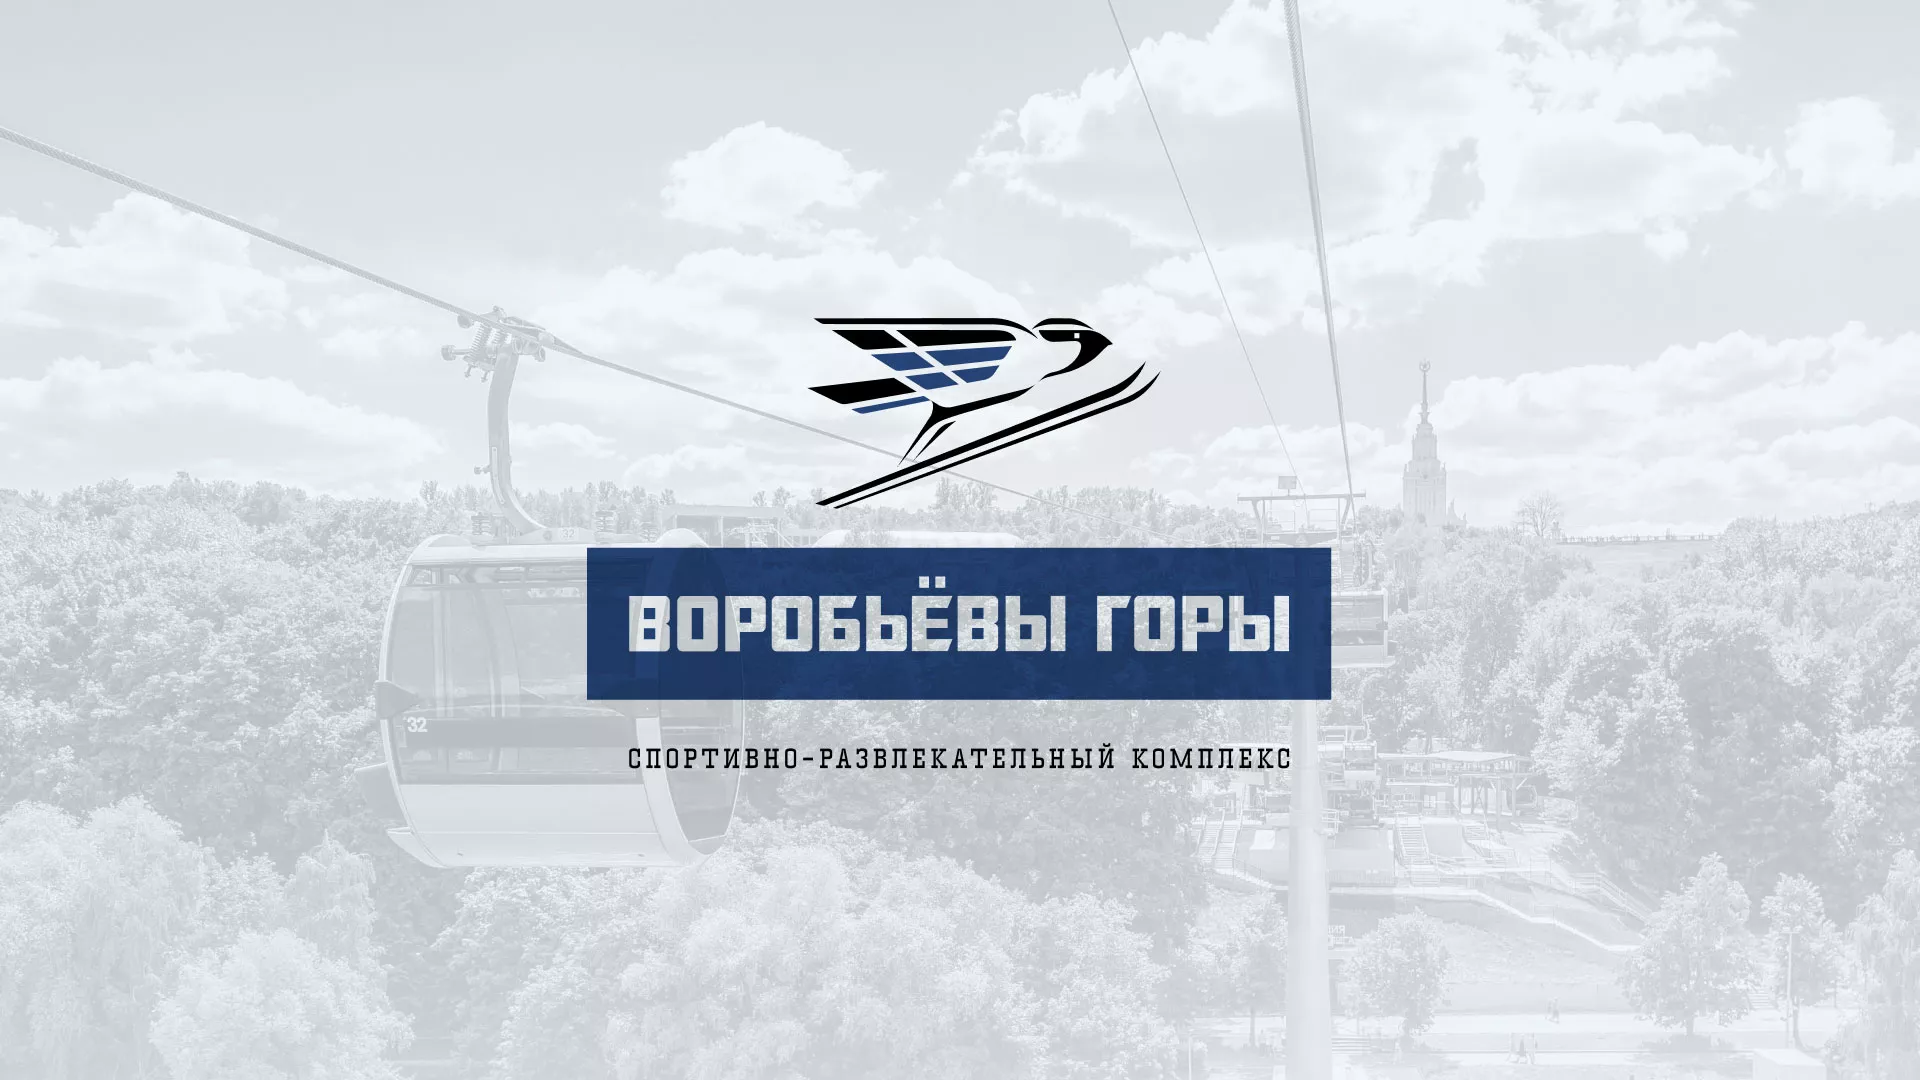 Разработка сайта в Ясногорске для спортивно-развлекательного комплекса «Воробьёвы горы»